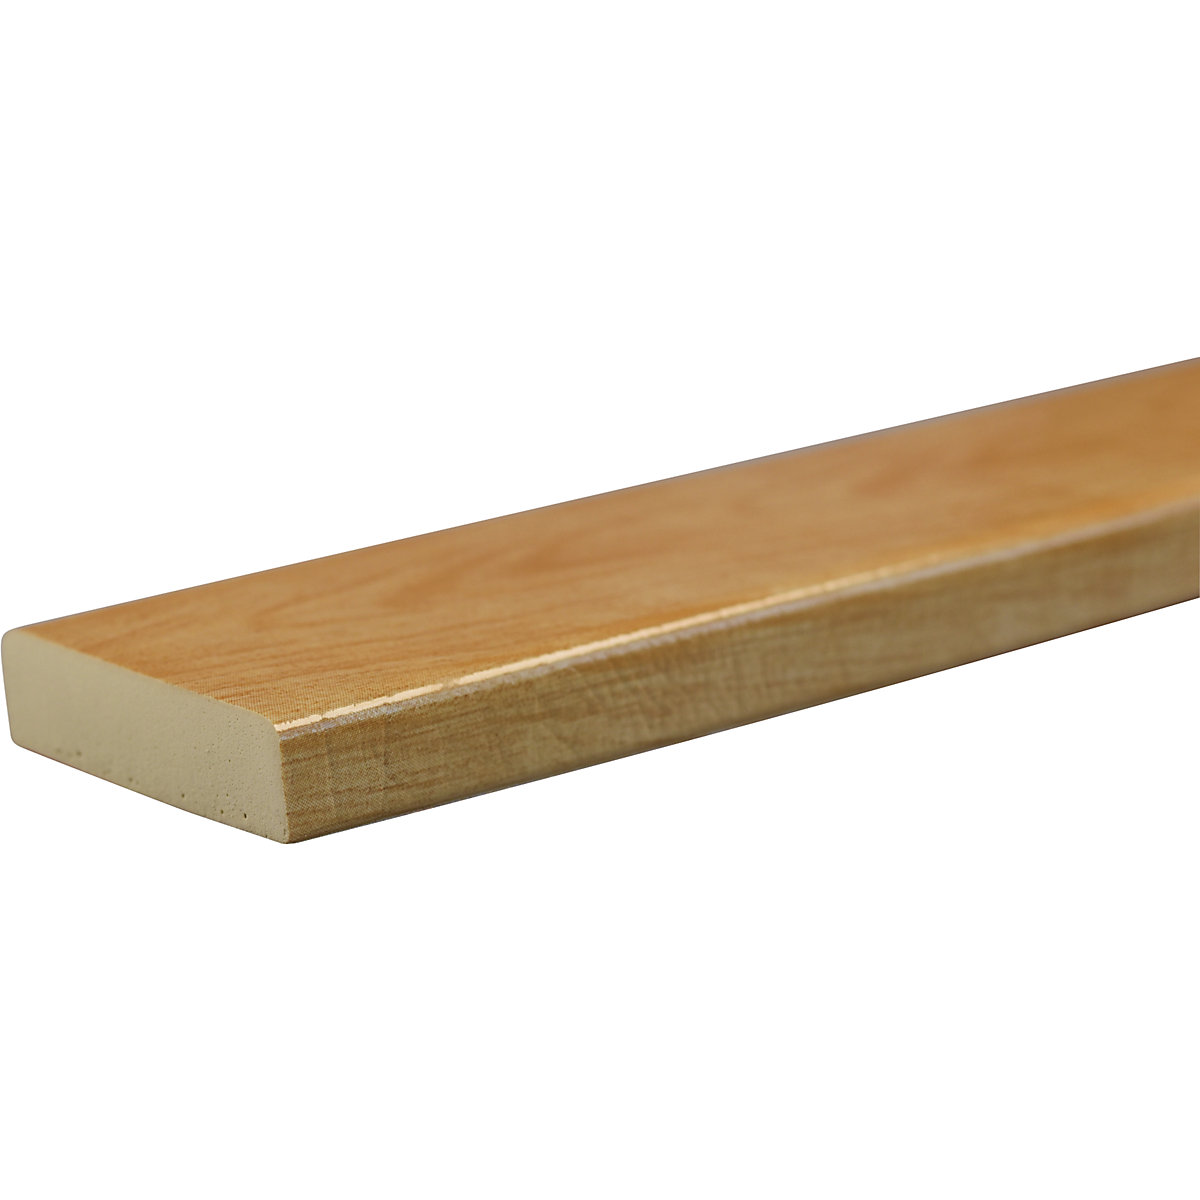 Protection des surfaces Knuffi® – SHG, type S, pièce de 1 mètre, façon bois naturel